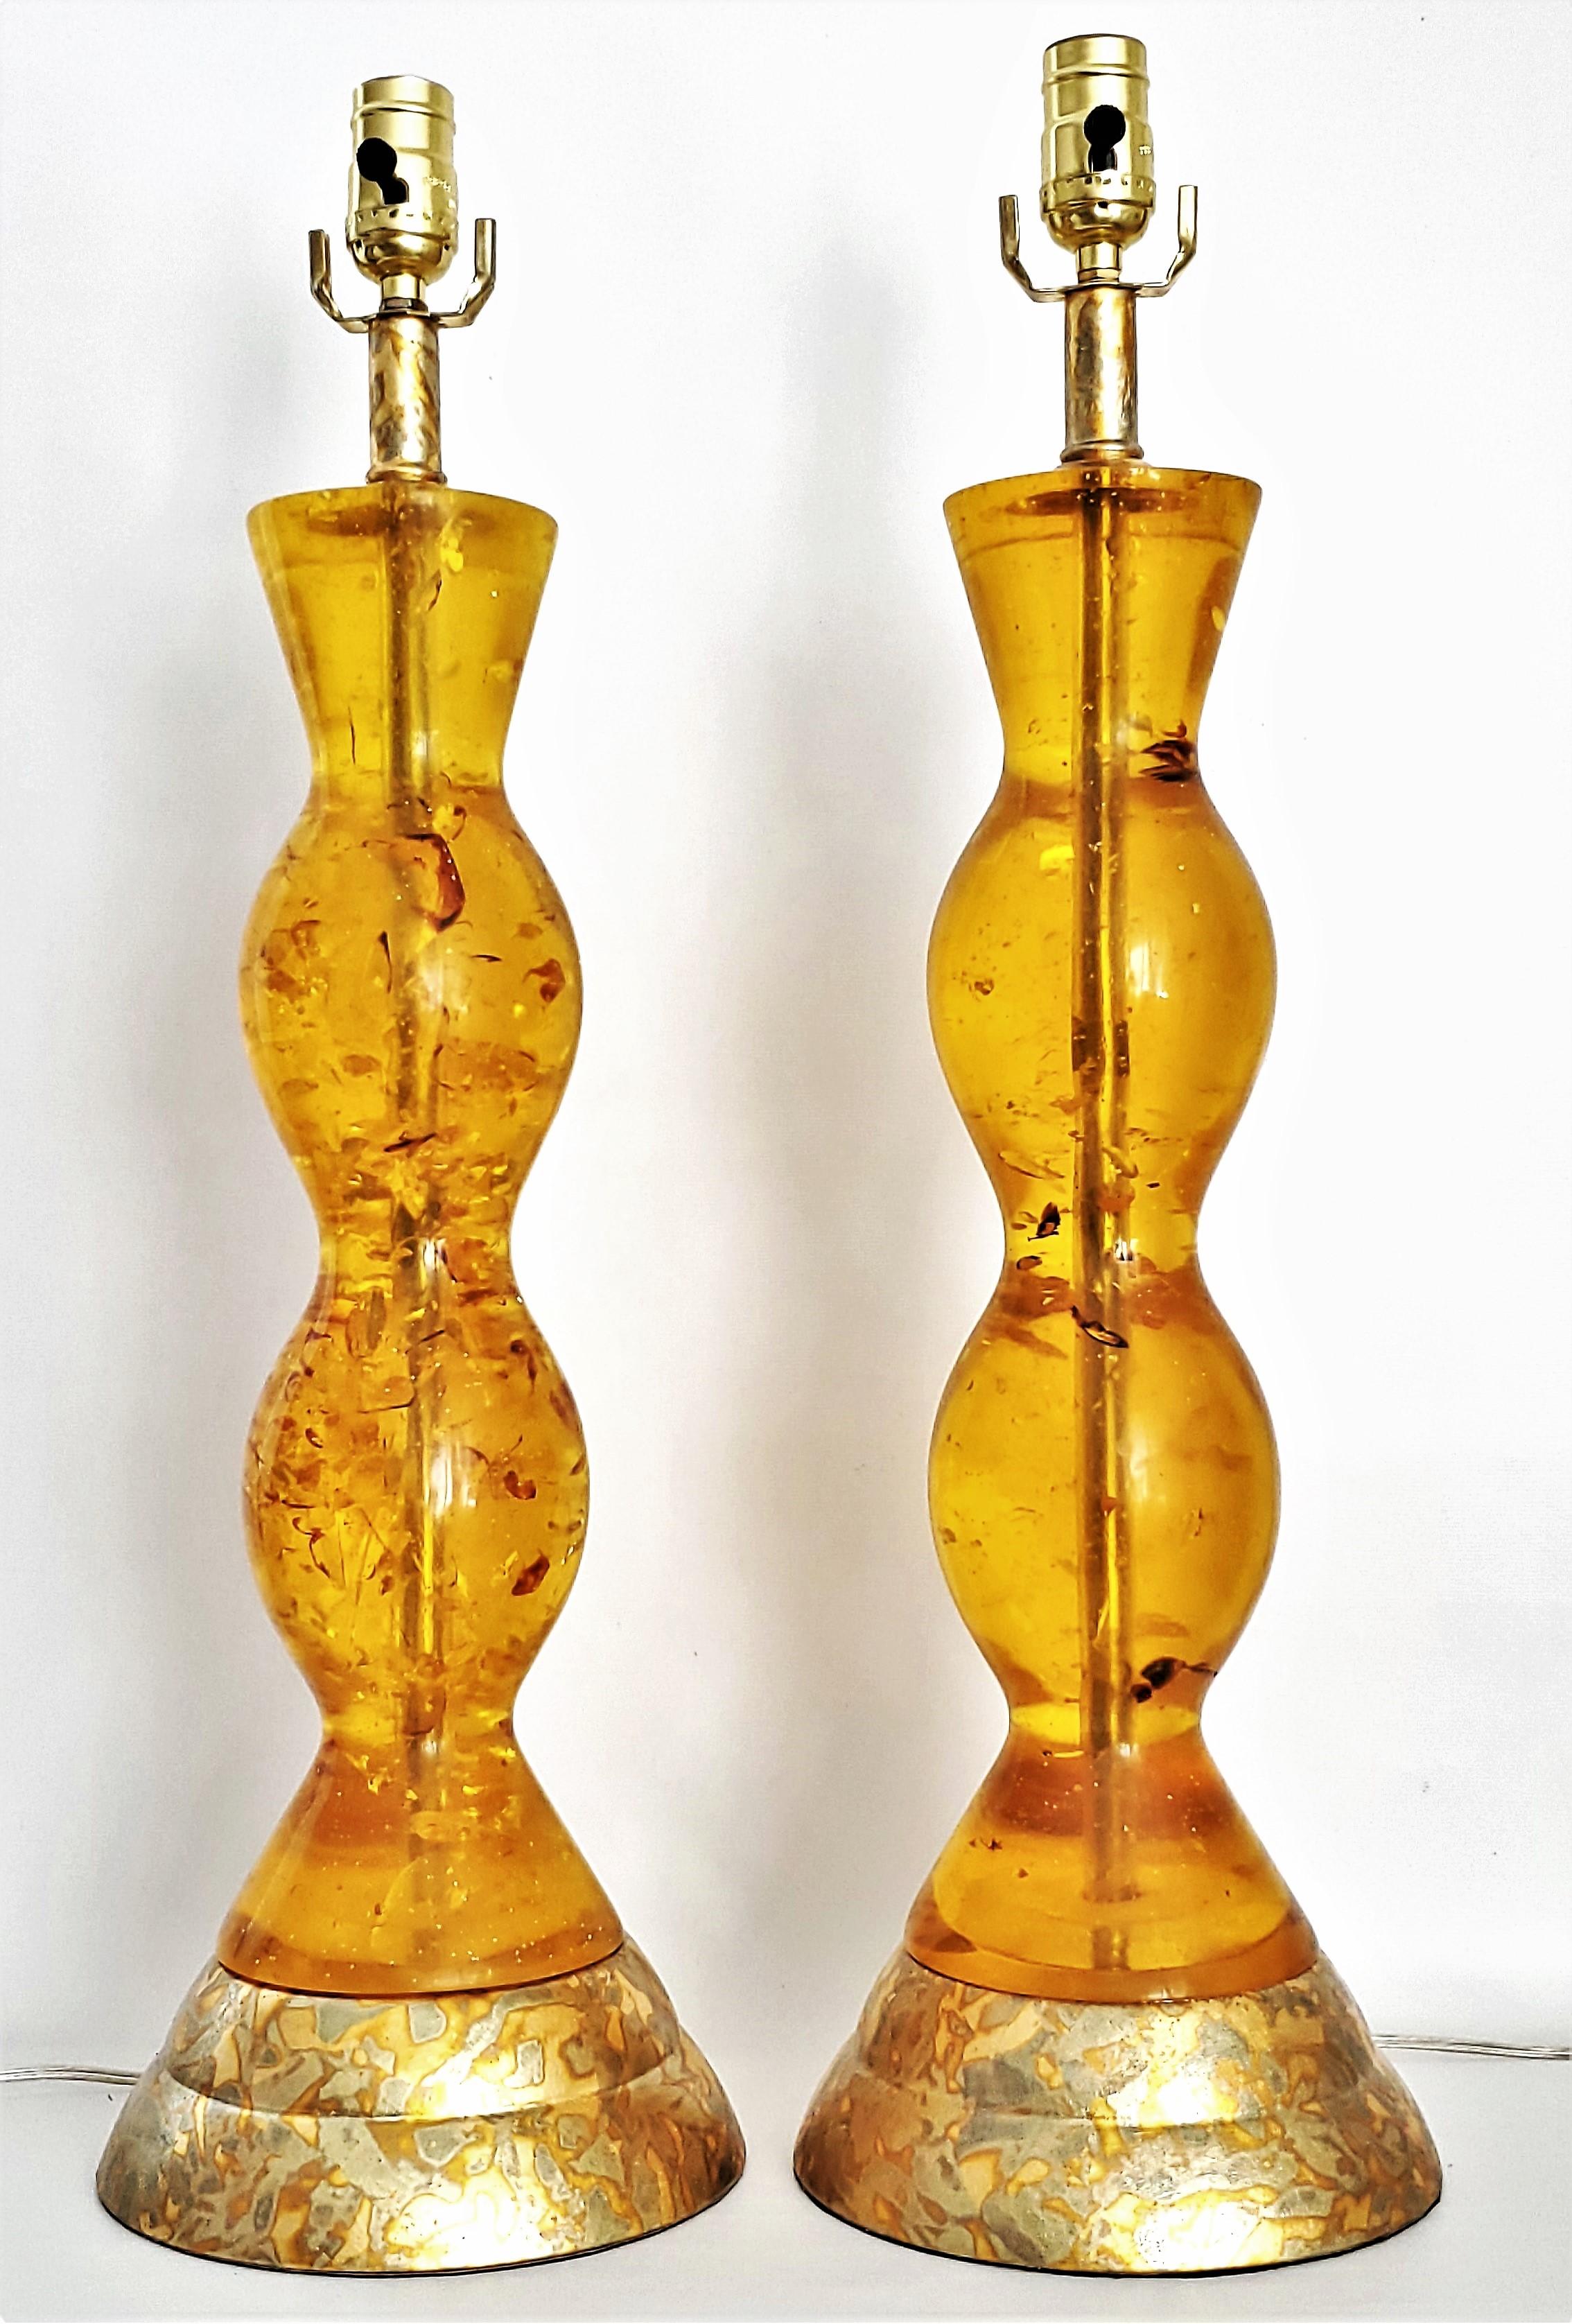 Paire de lampes de table restaurées en Lucite couleur ambre et feuilles d'or, circa 1980.  Il s'agit d'une rare paire de lampes en Lucite réalisées dans le style du designer français Pierre Giraudon. La Lucite est remplie d'inclusions de couleur